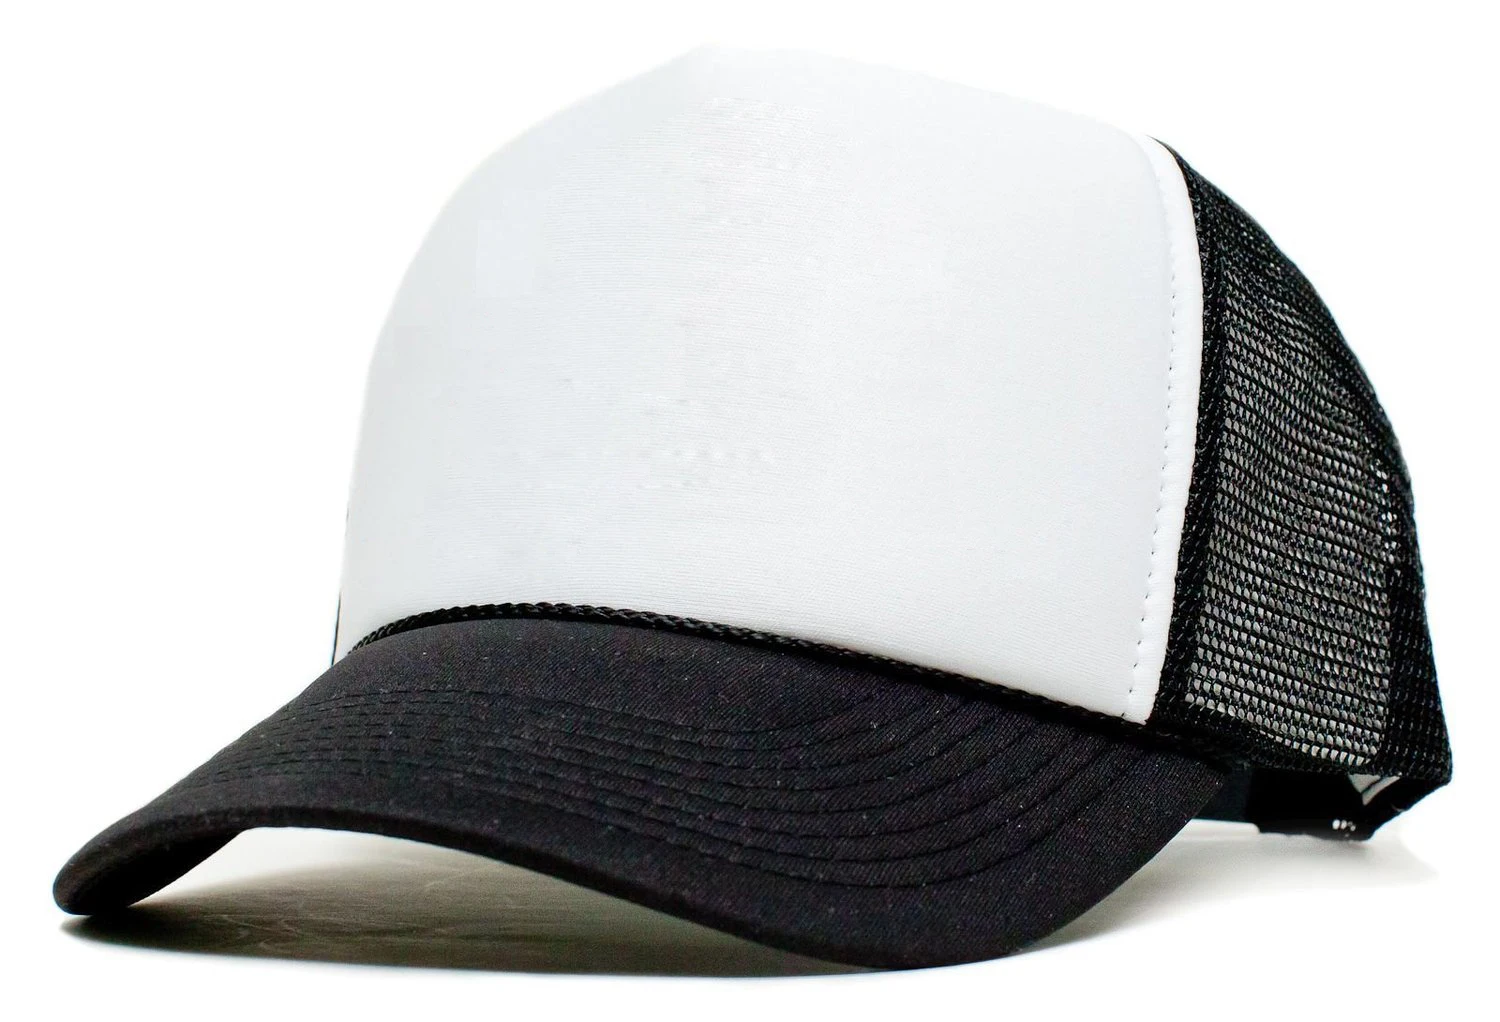 Dutrodu унисекс Бейсбол-Шапки сетки задней Свинья Hat Шапки в стиле хип-хоп